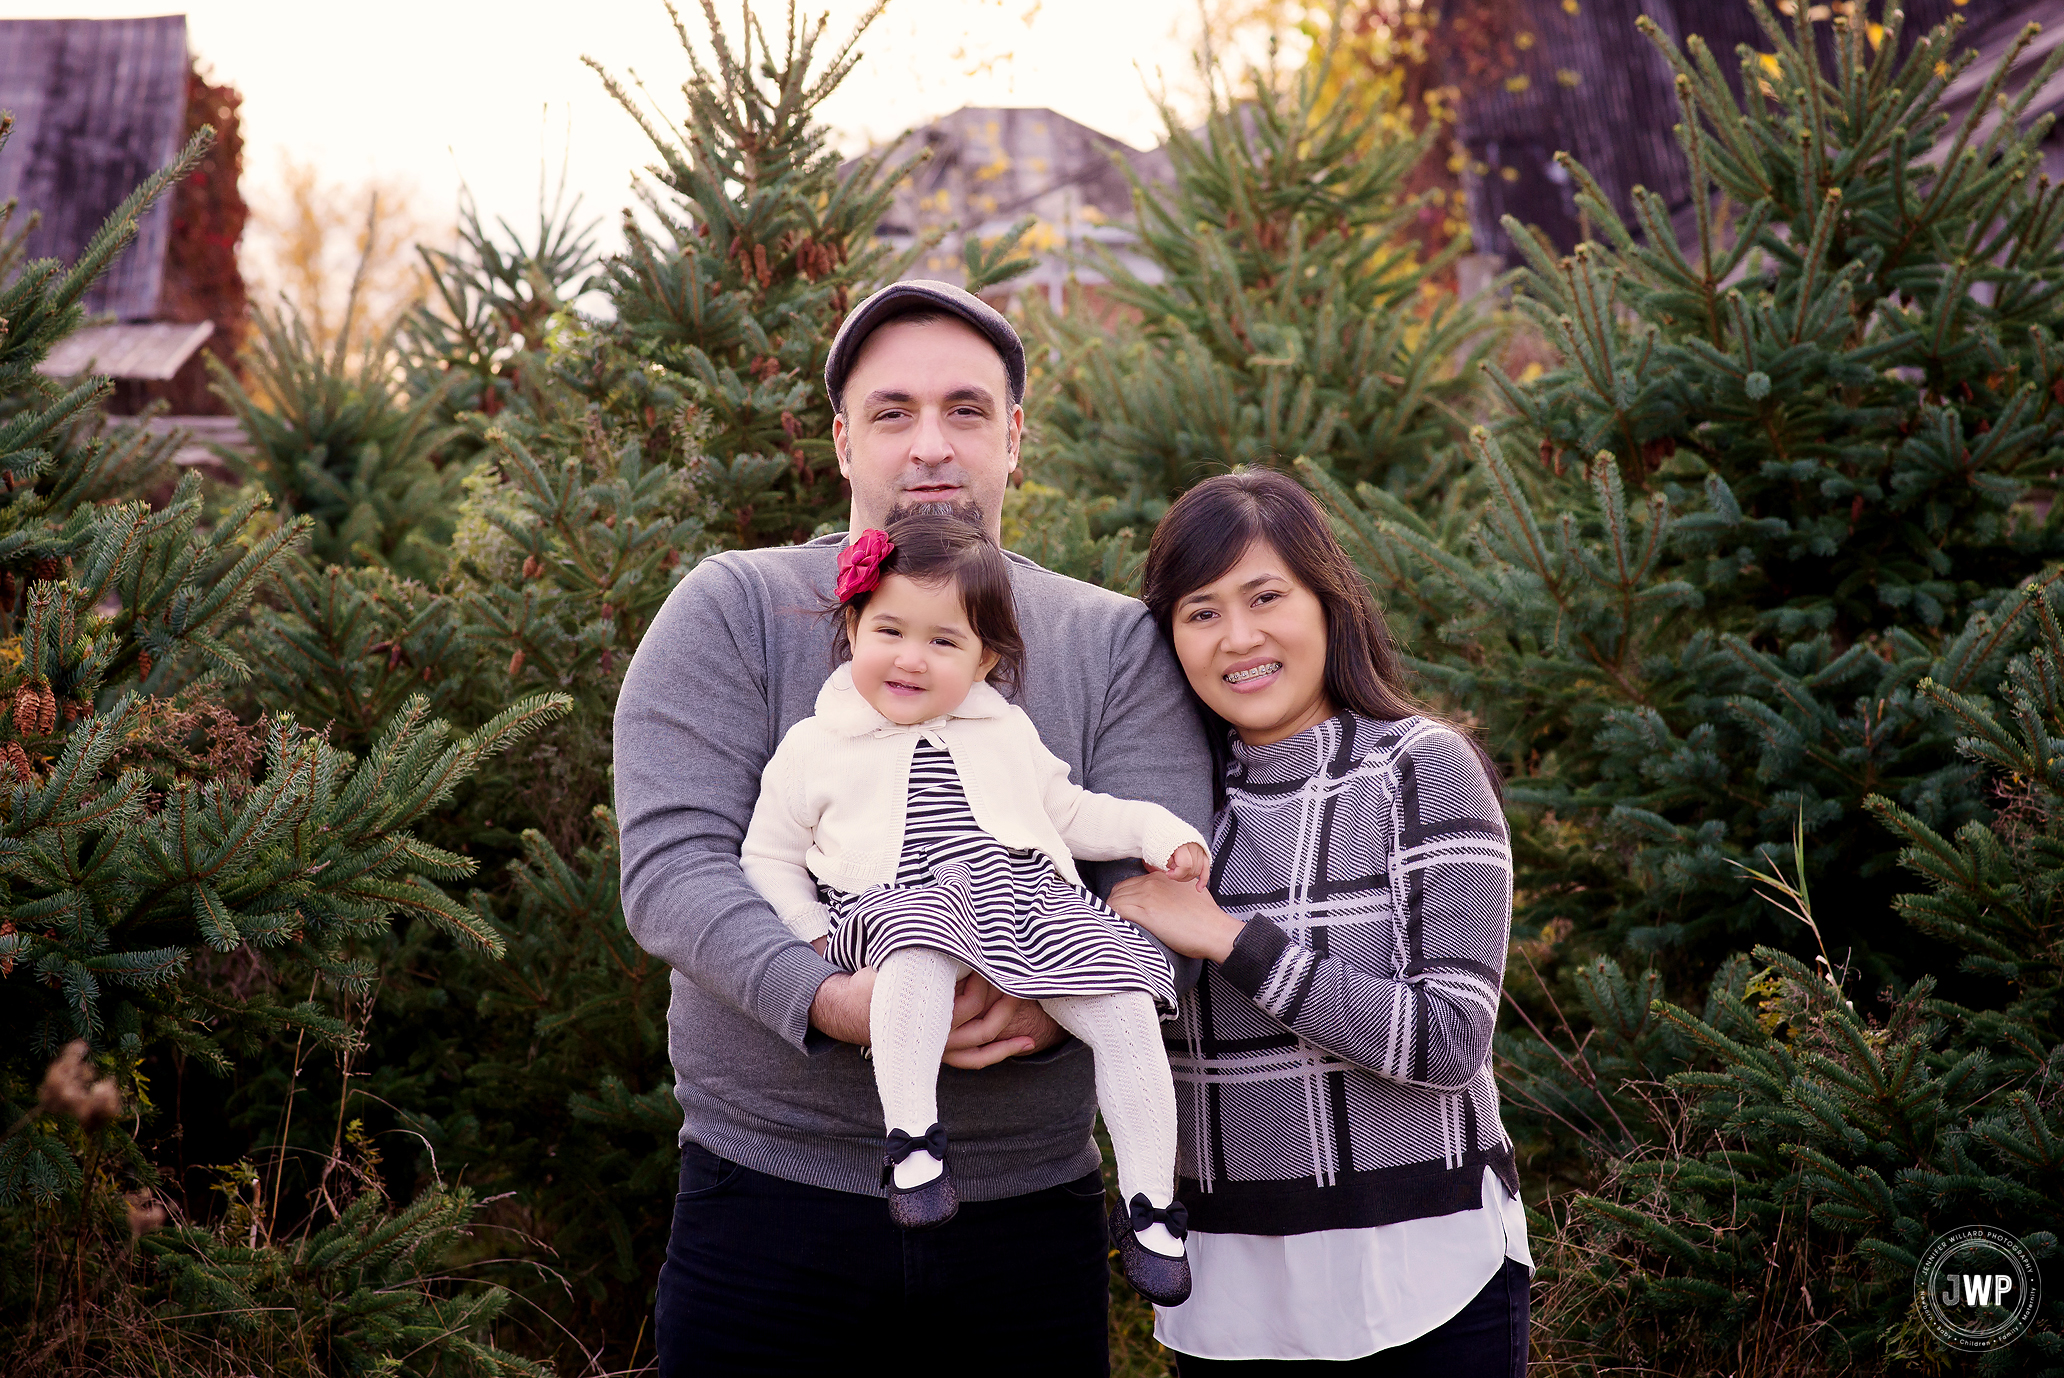 family portrait christmas tree farm Kingston ontario photographer